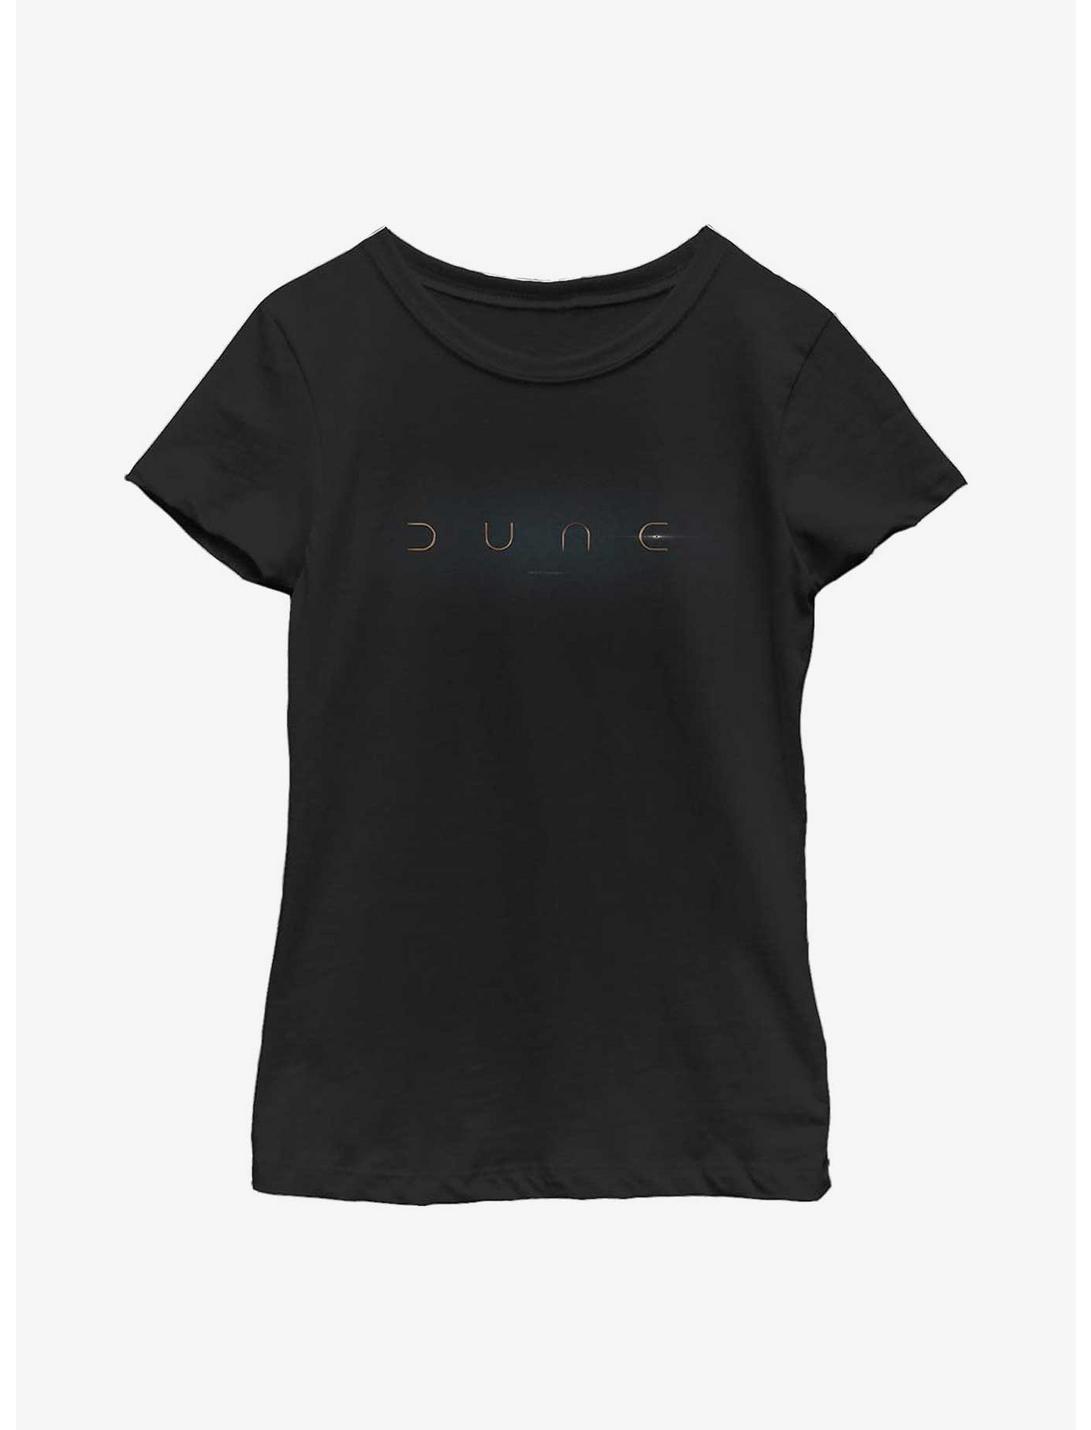 Dune Logo Youth Girls T-Shirt, BLACK, hi-res